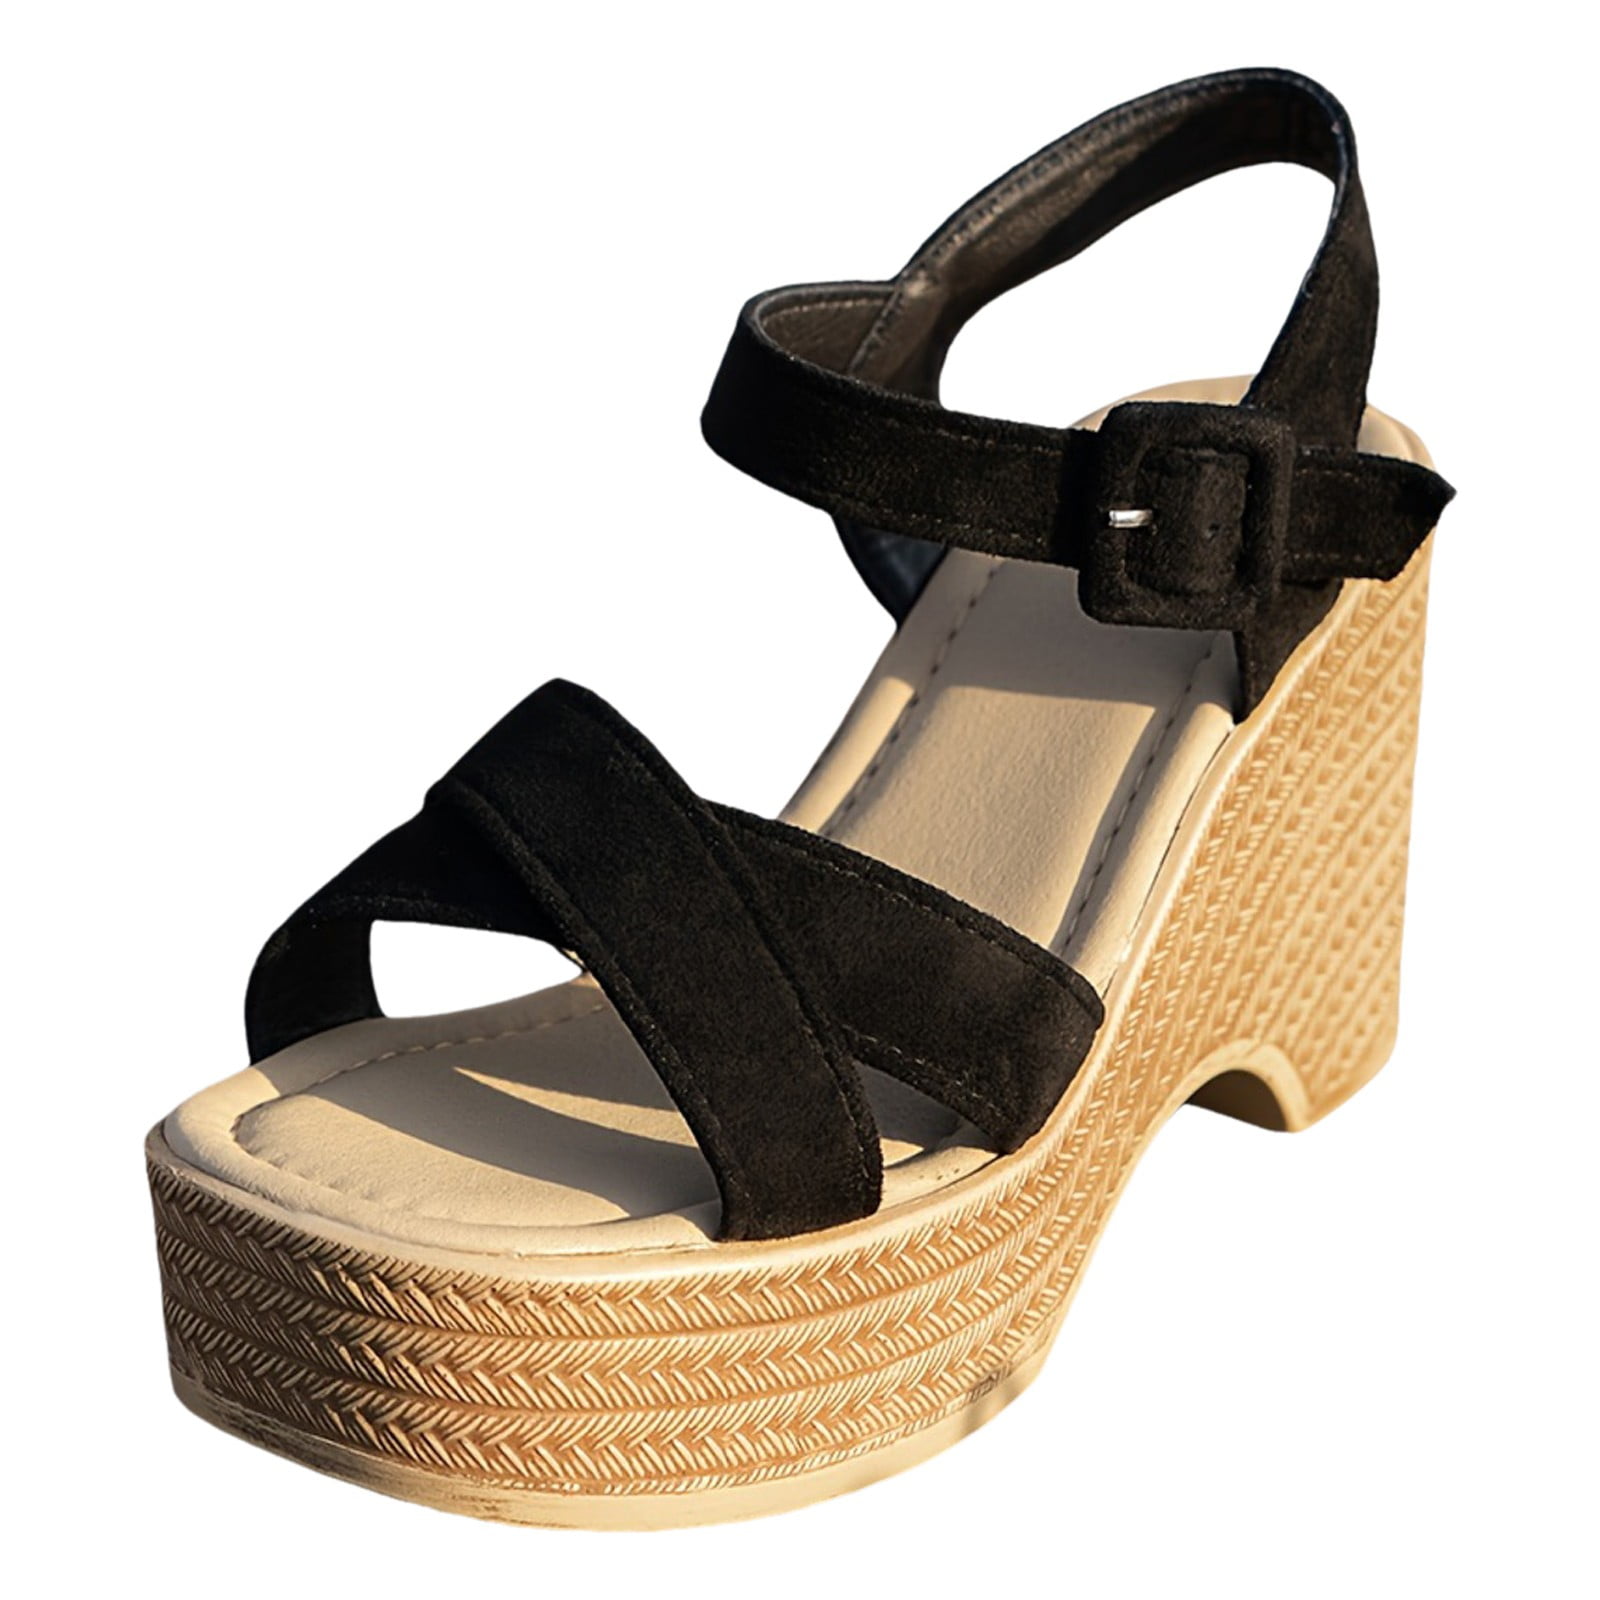 RUICUW Women's Platform Sandals Casual Open Toe Summer Shoes ...